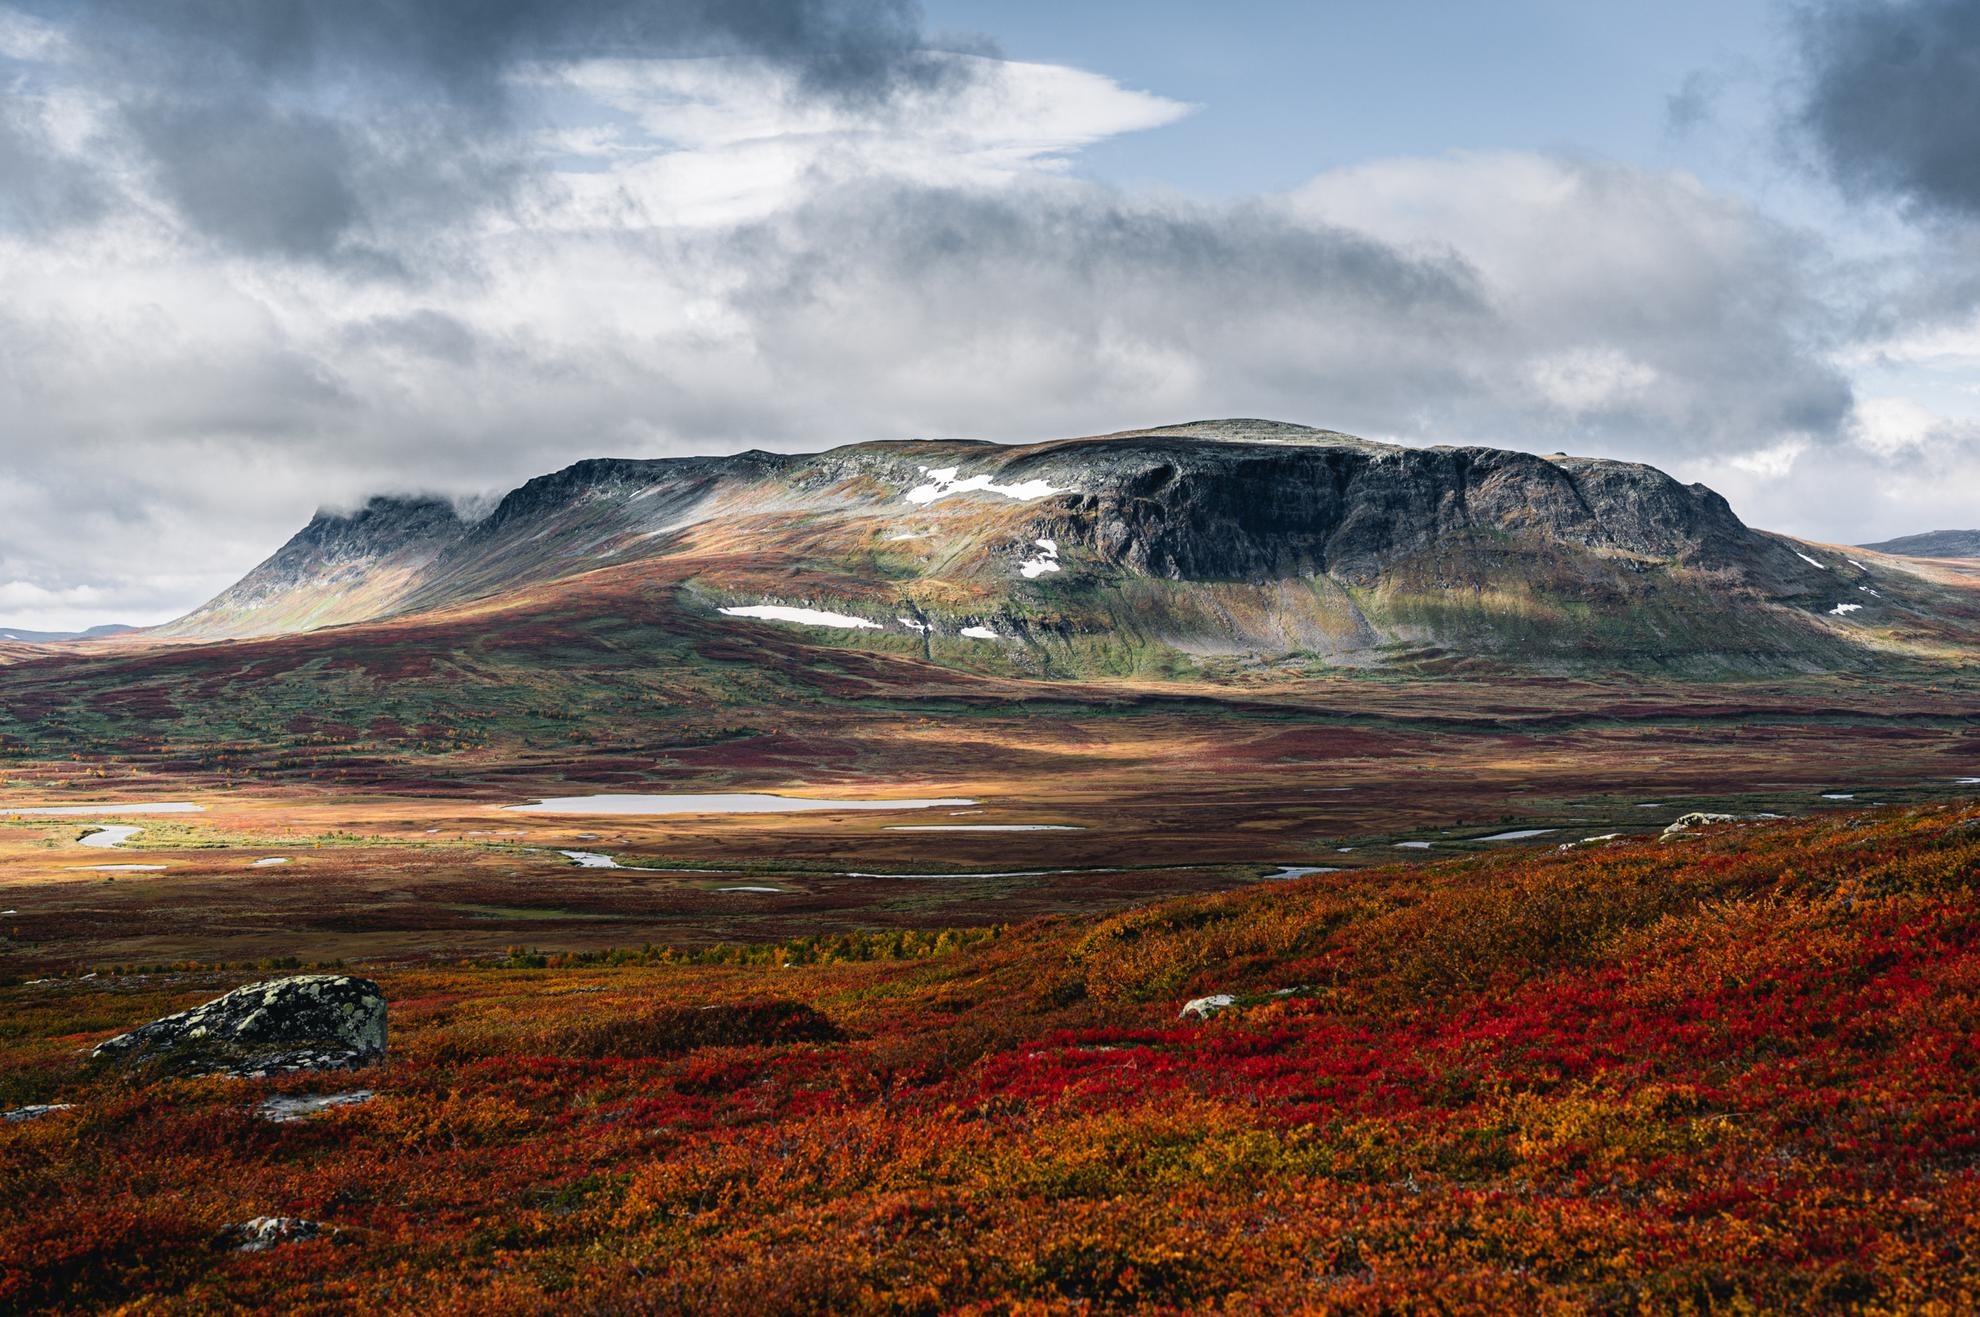 Landscape view of mountainous terrain with autumn colours.